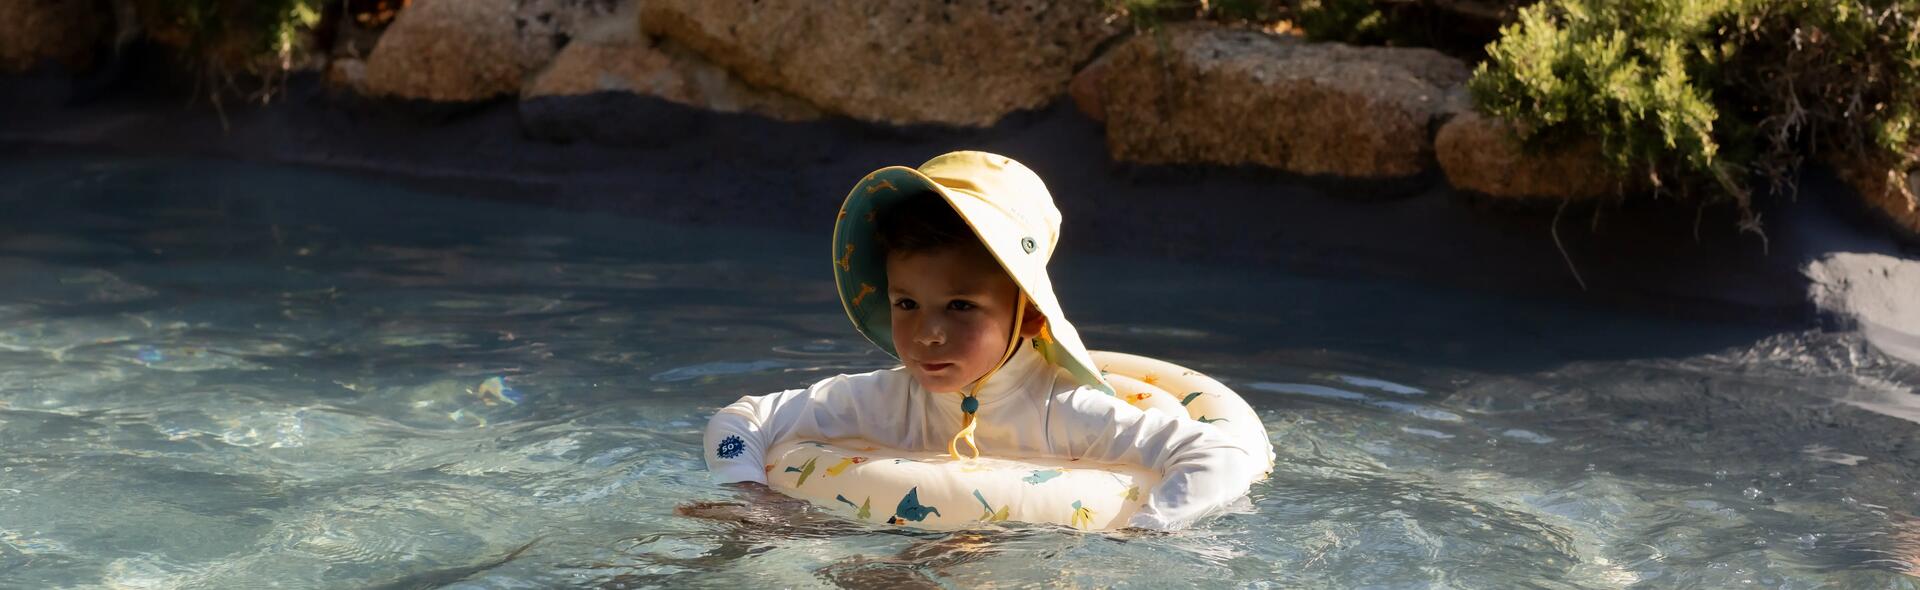 Wpływ pływania na rozwój dziecka - Blog Decathlon